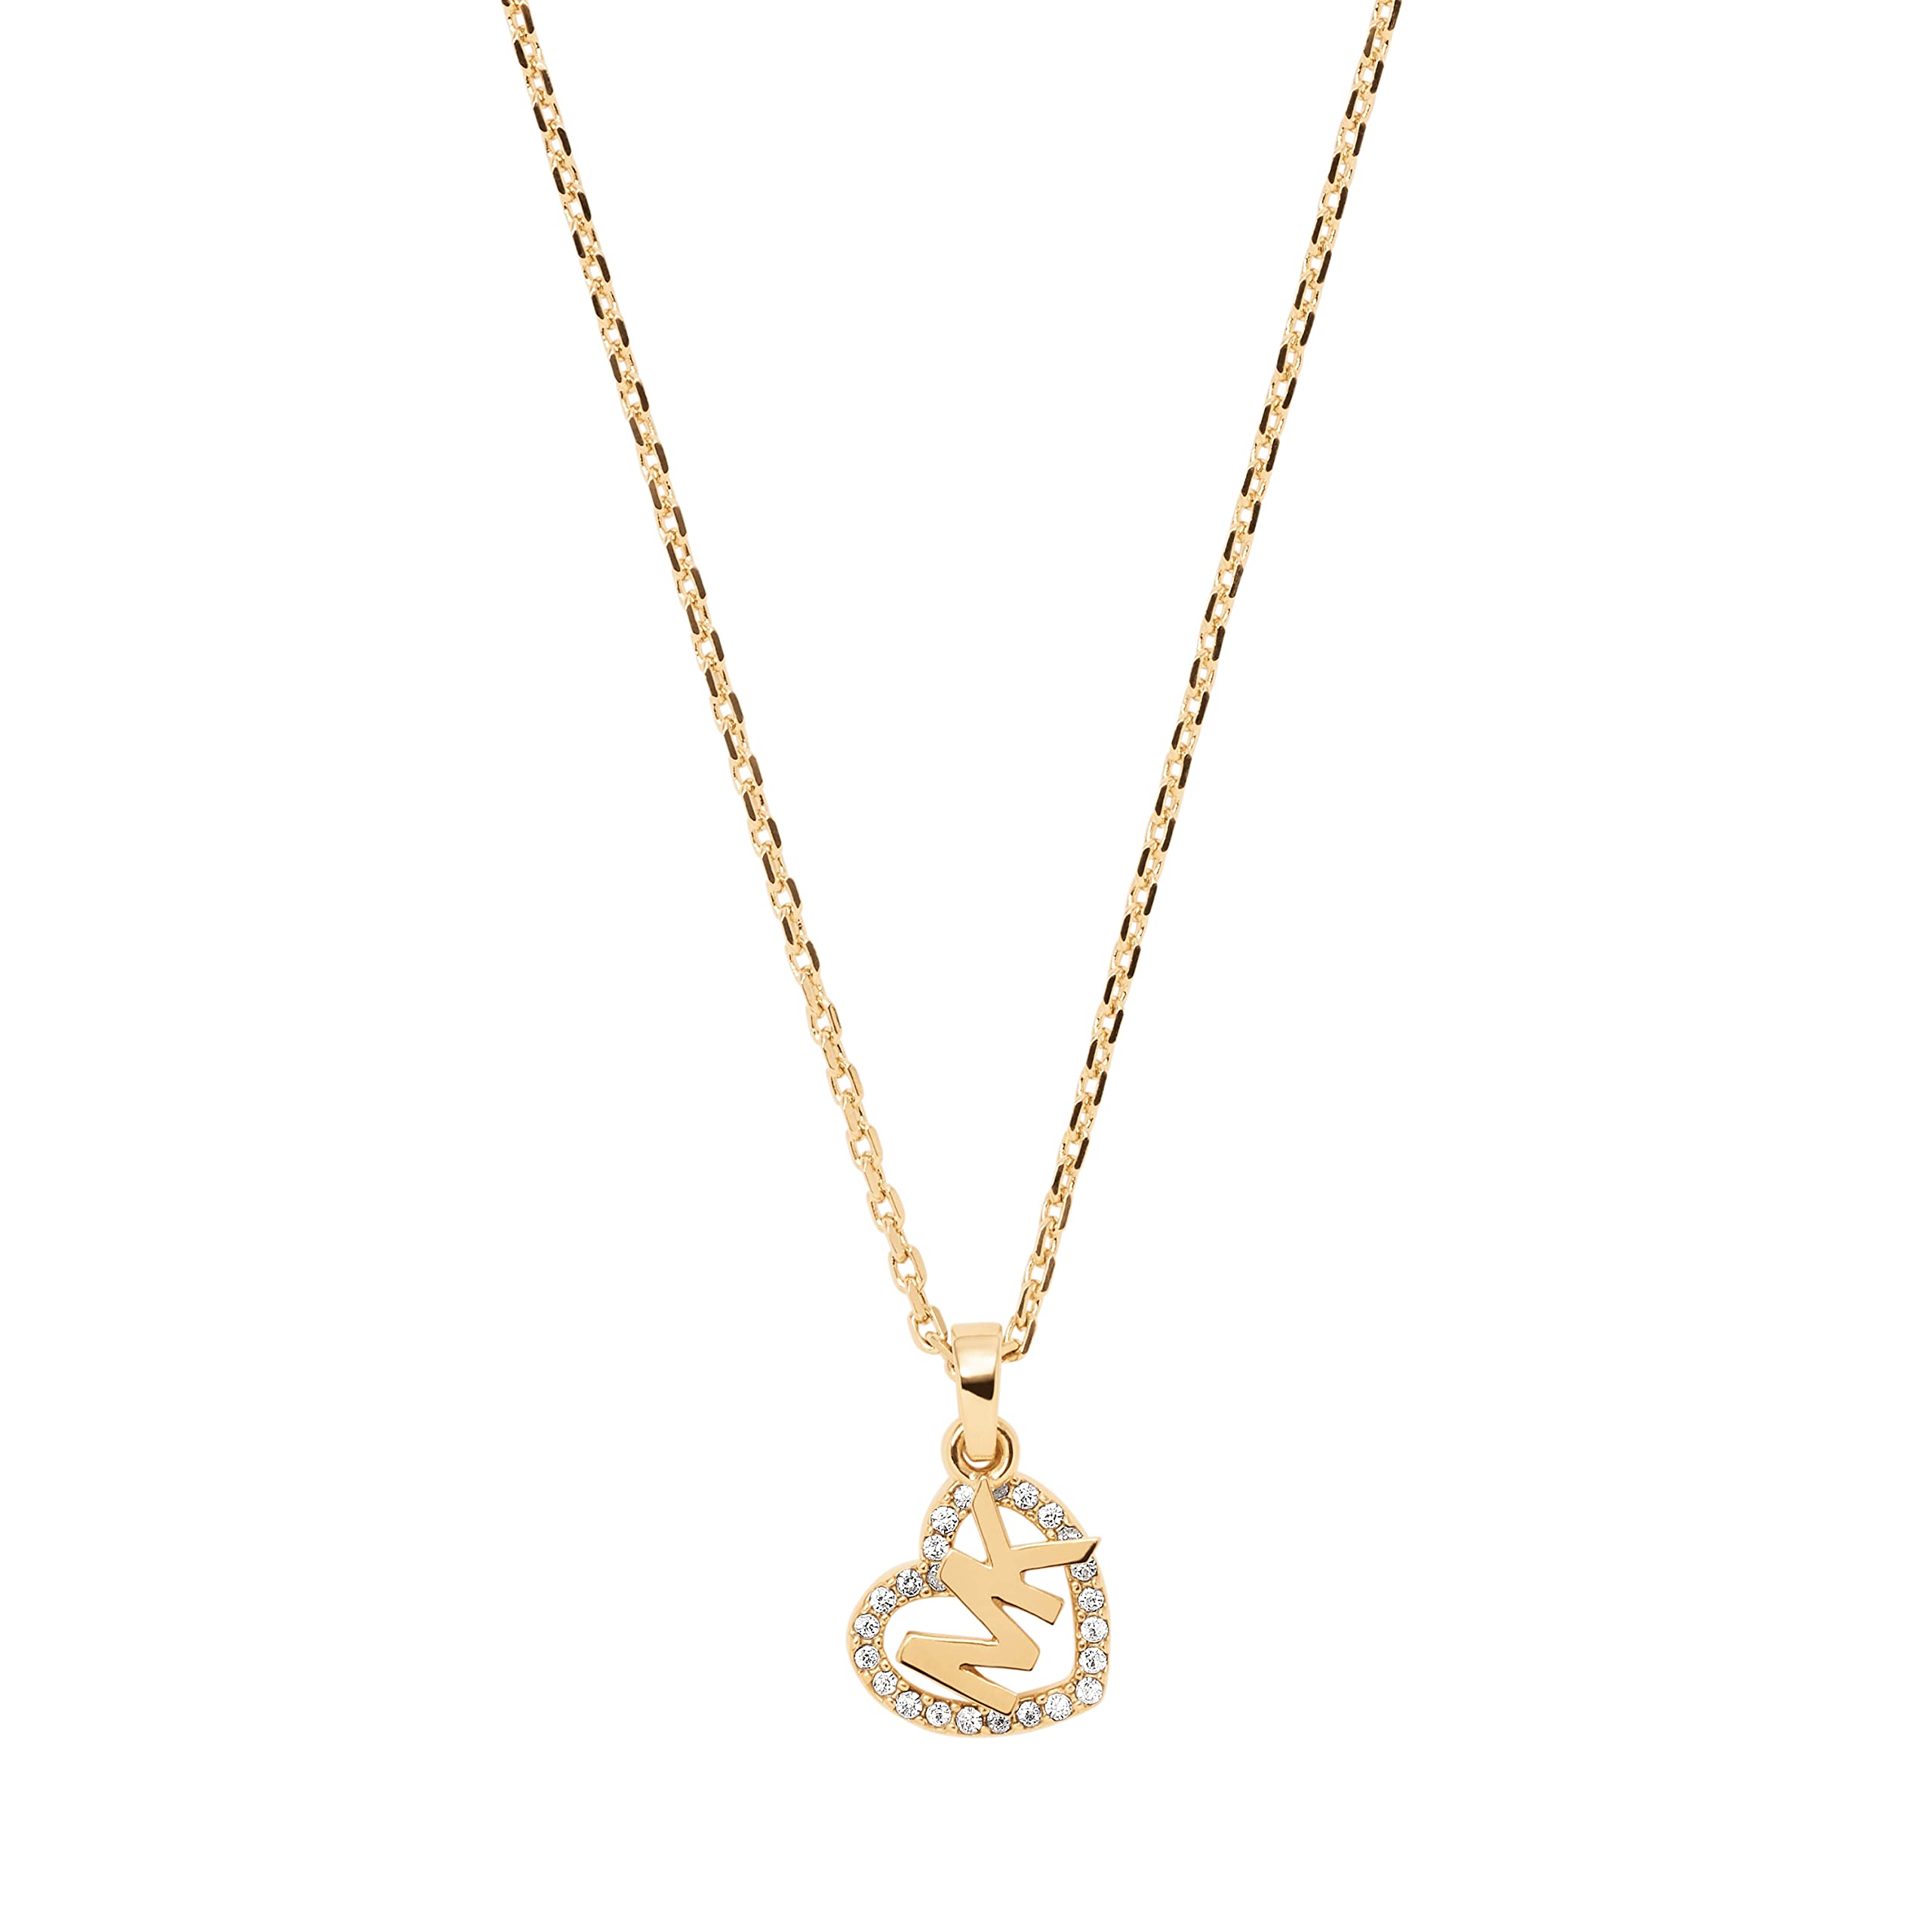 Michael Kors Women's Gold Brass Pendant Necklace (Model: MKJ7776710)